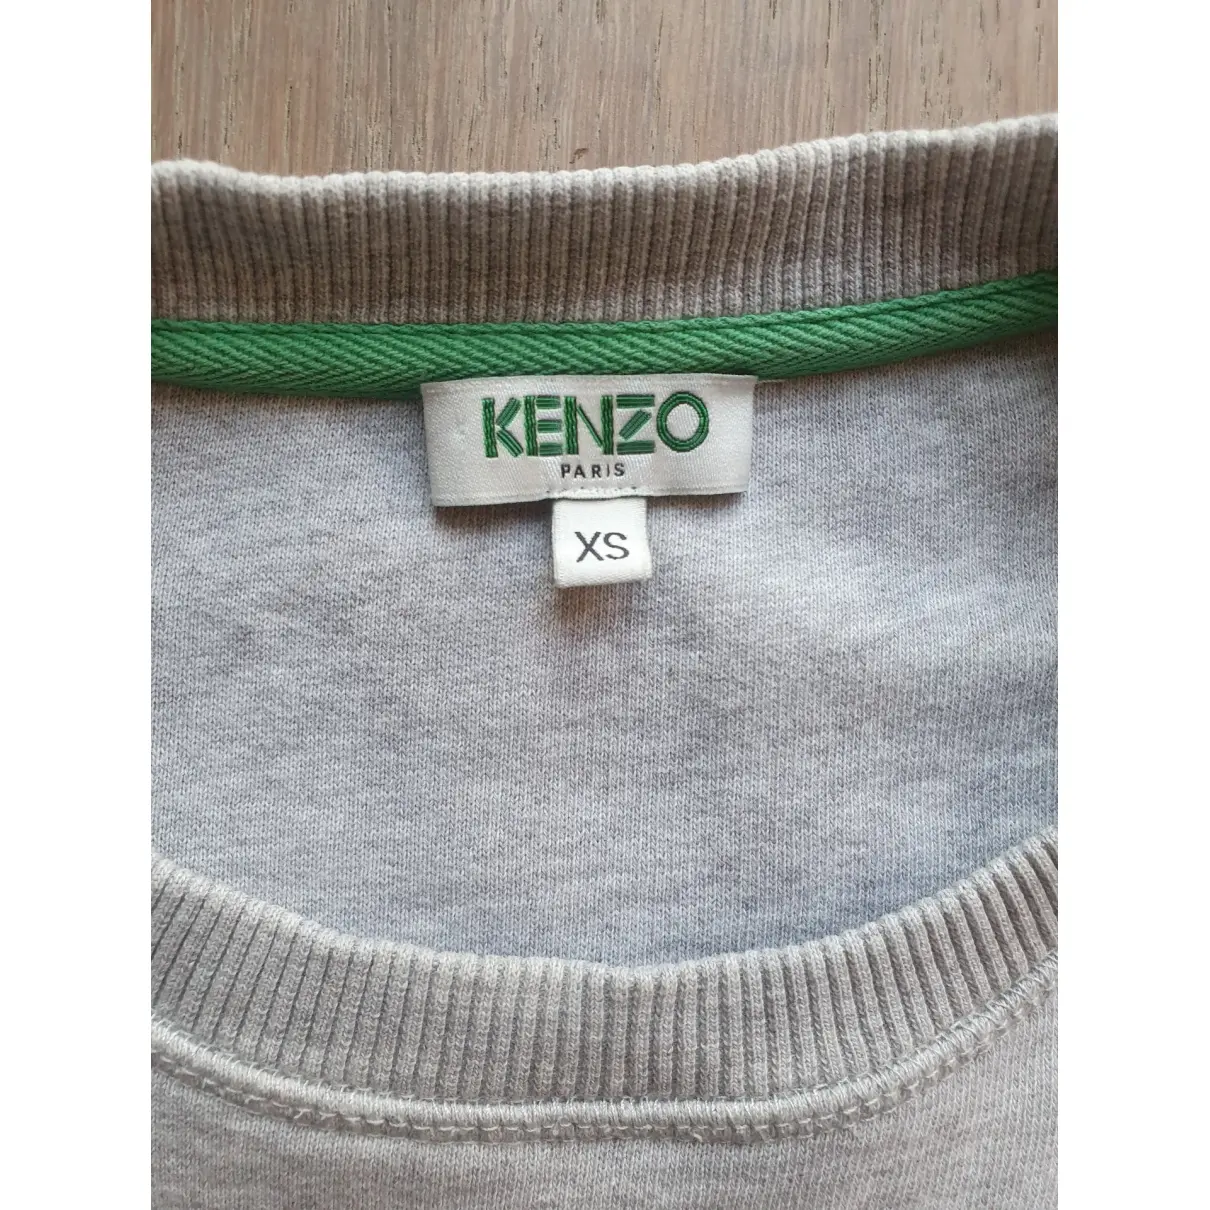 Buy Kenzo Beige Cotton Knitwear & Sweatshirt online